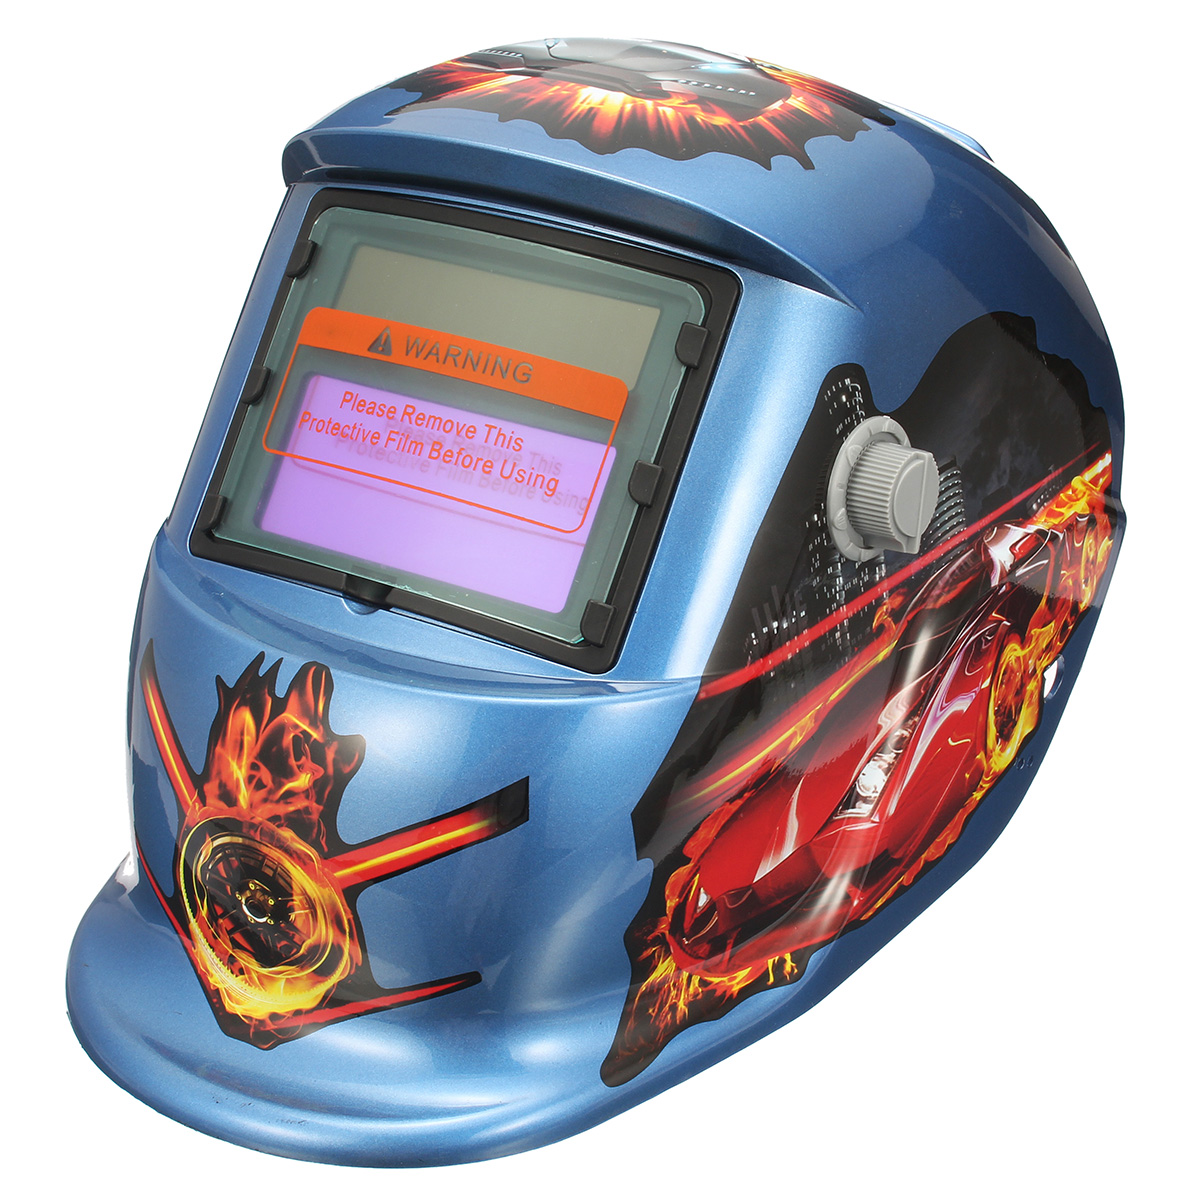 

Fire Pro Solar Auto Welding Darkening Helmet Arc Tig mig Grinding Welders Mask